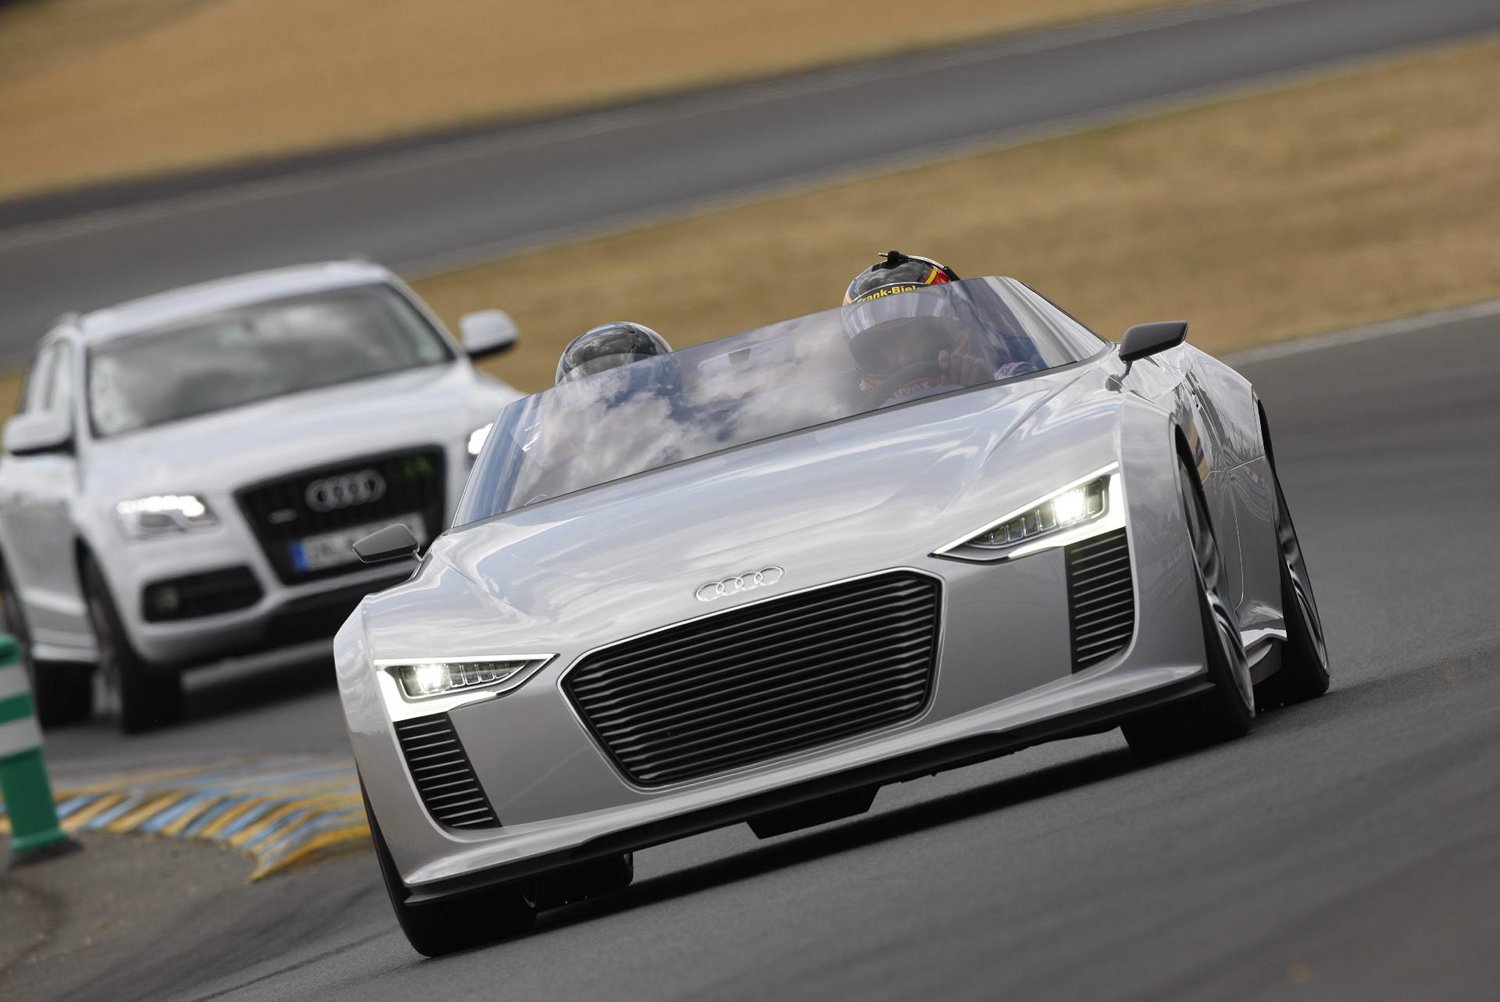 Audi e-tron Spyder at Le Mans